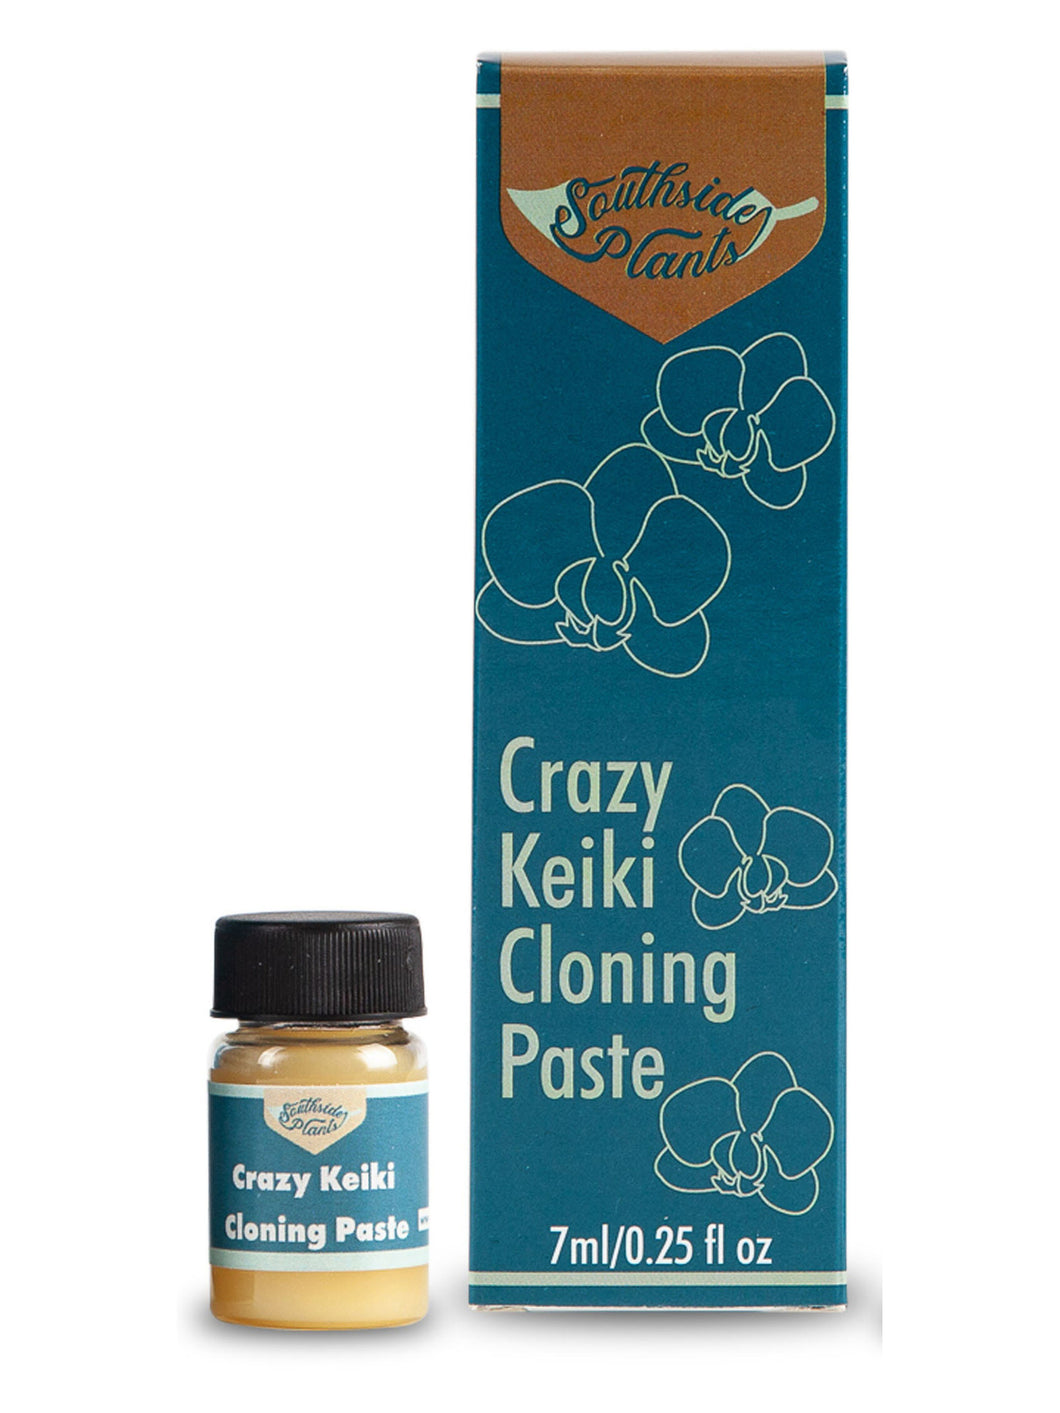 Crazy Keiki Cloning Paste